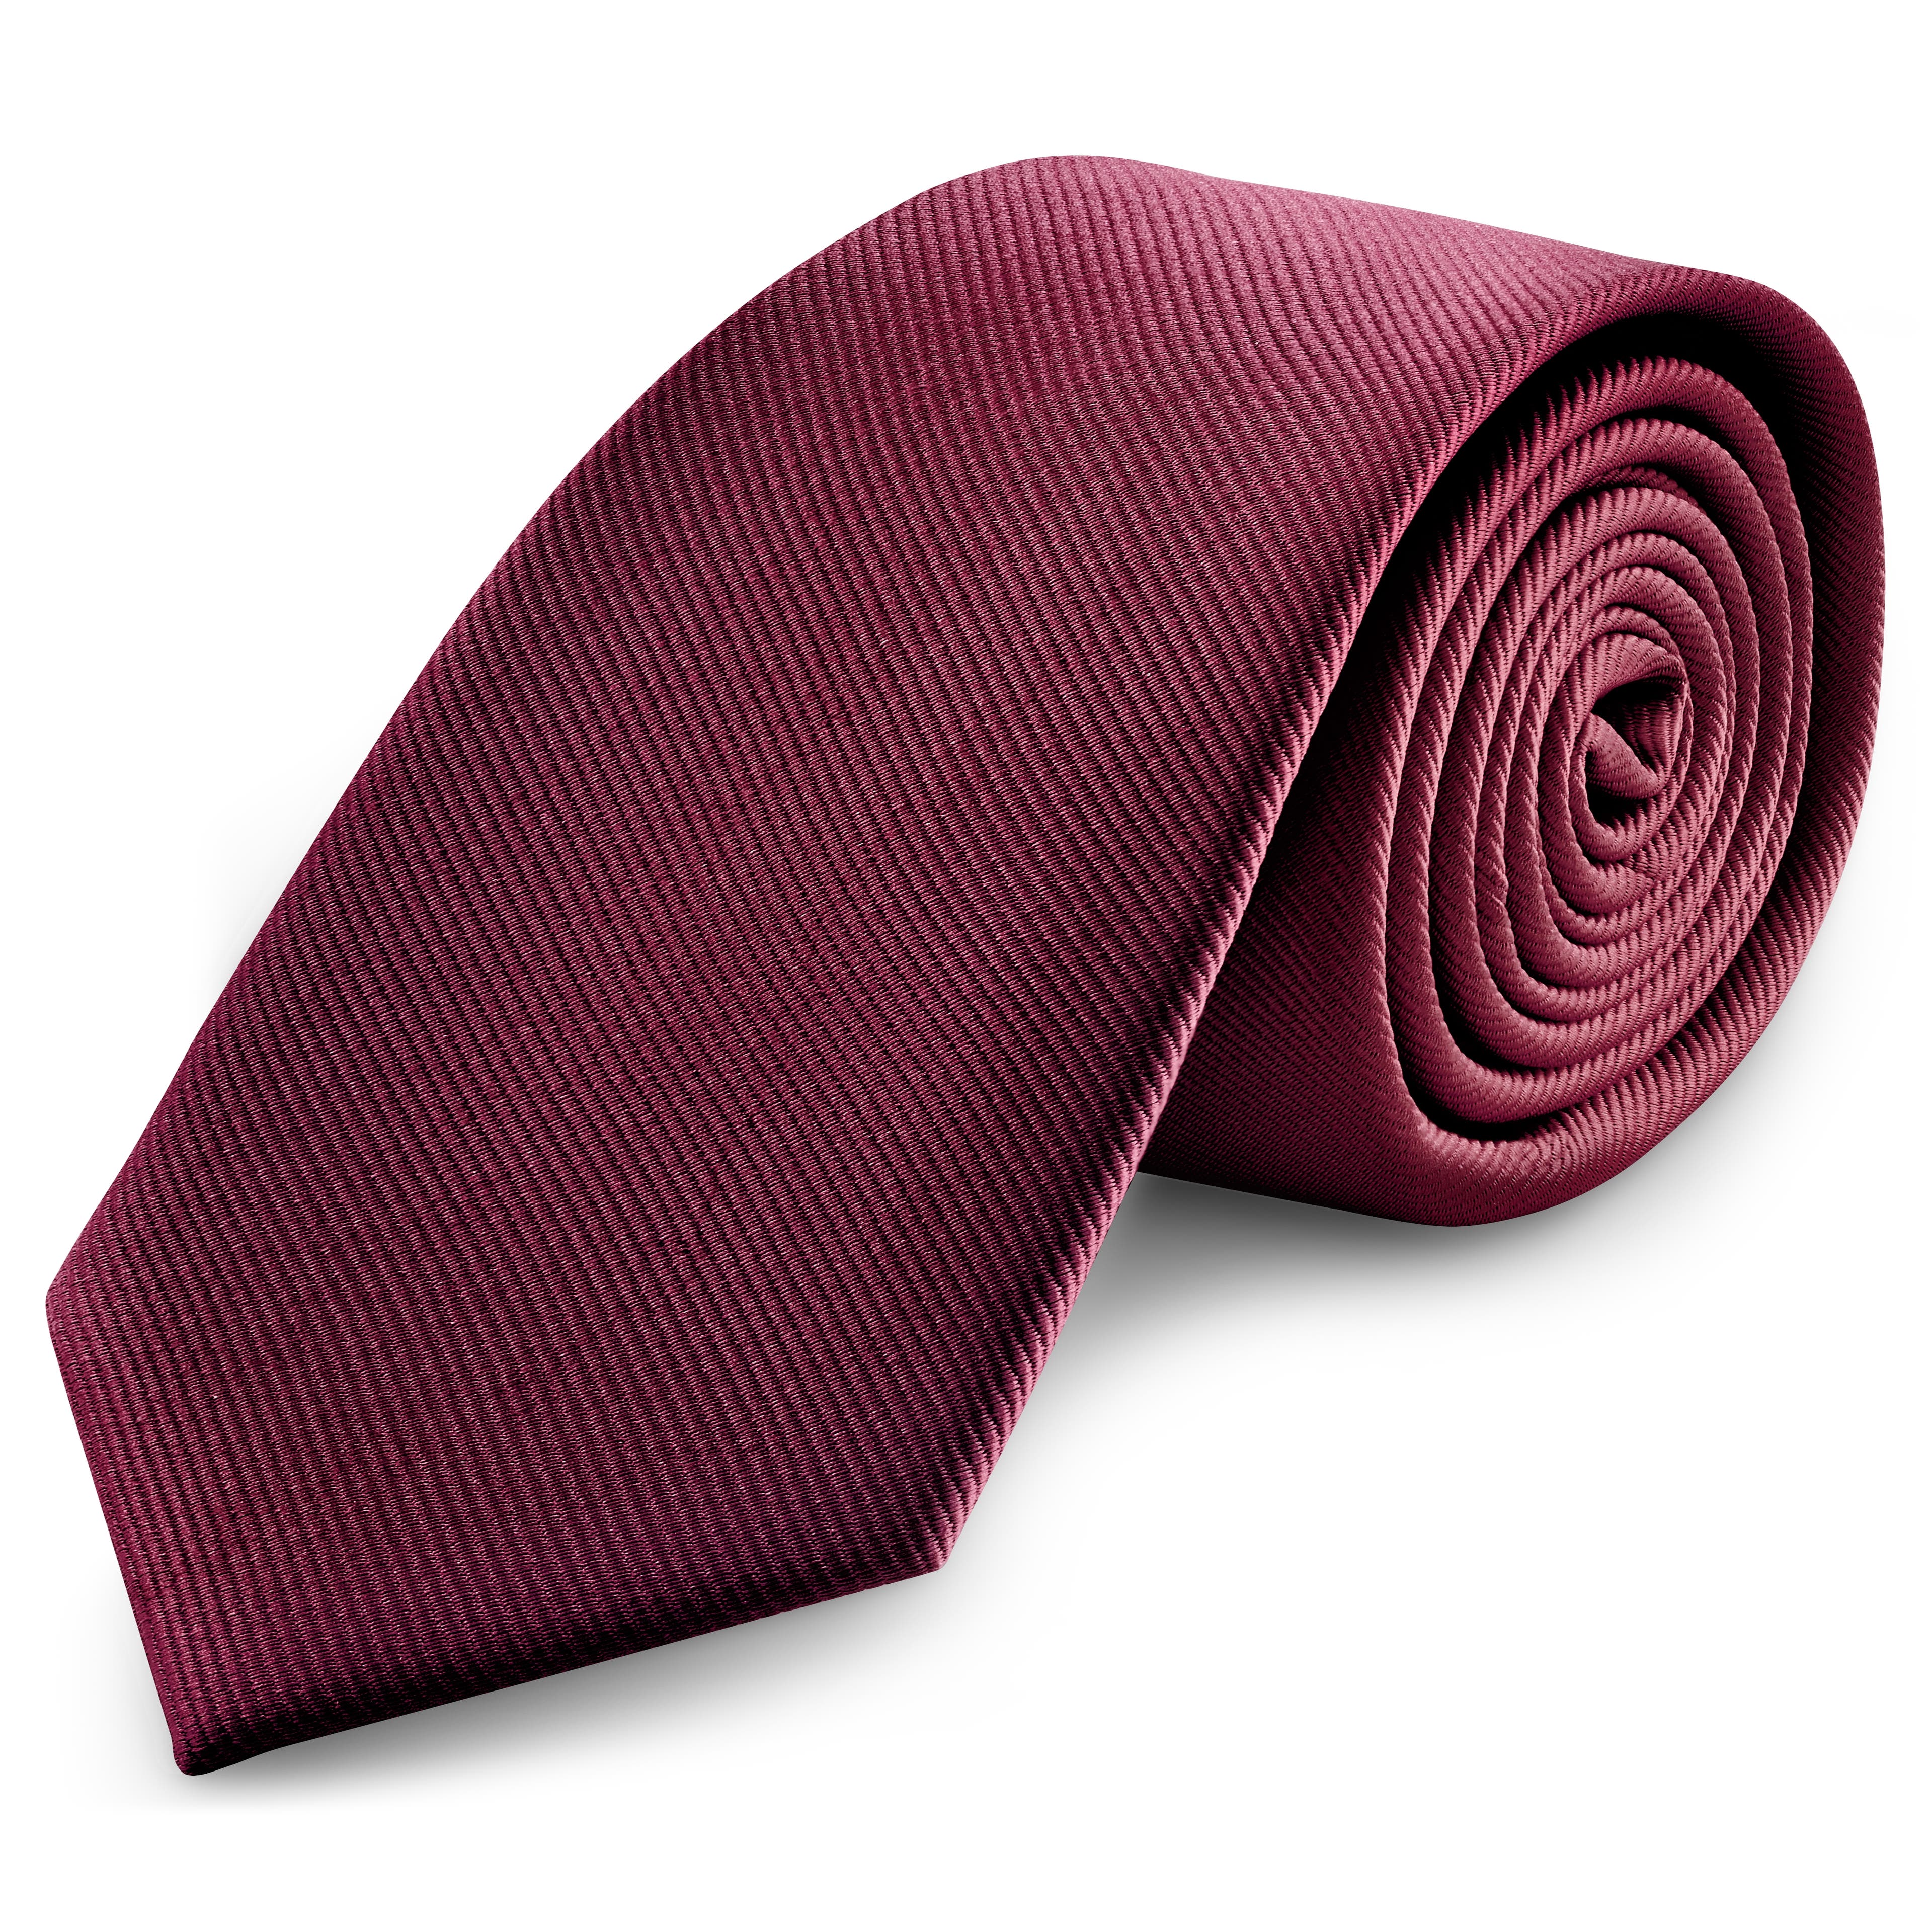 Cravate en gros-grain couleur bourgogne de 8 cm